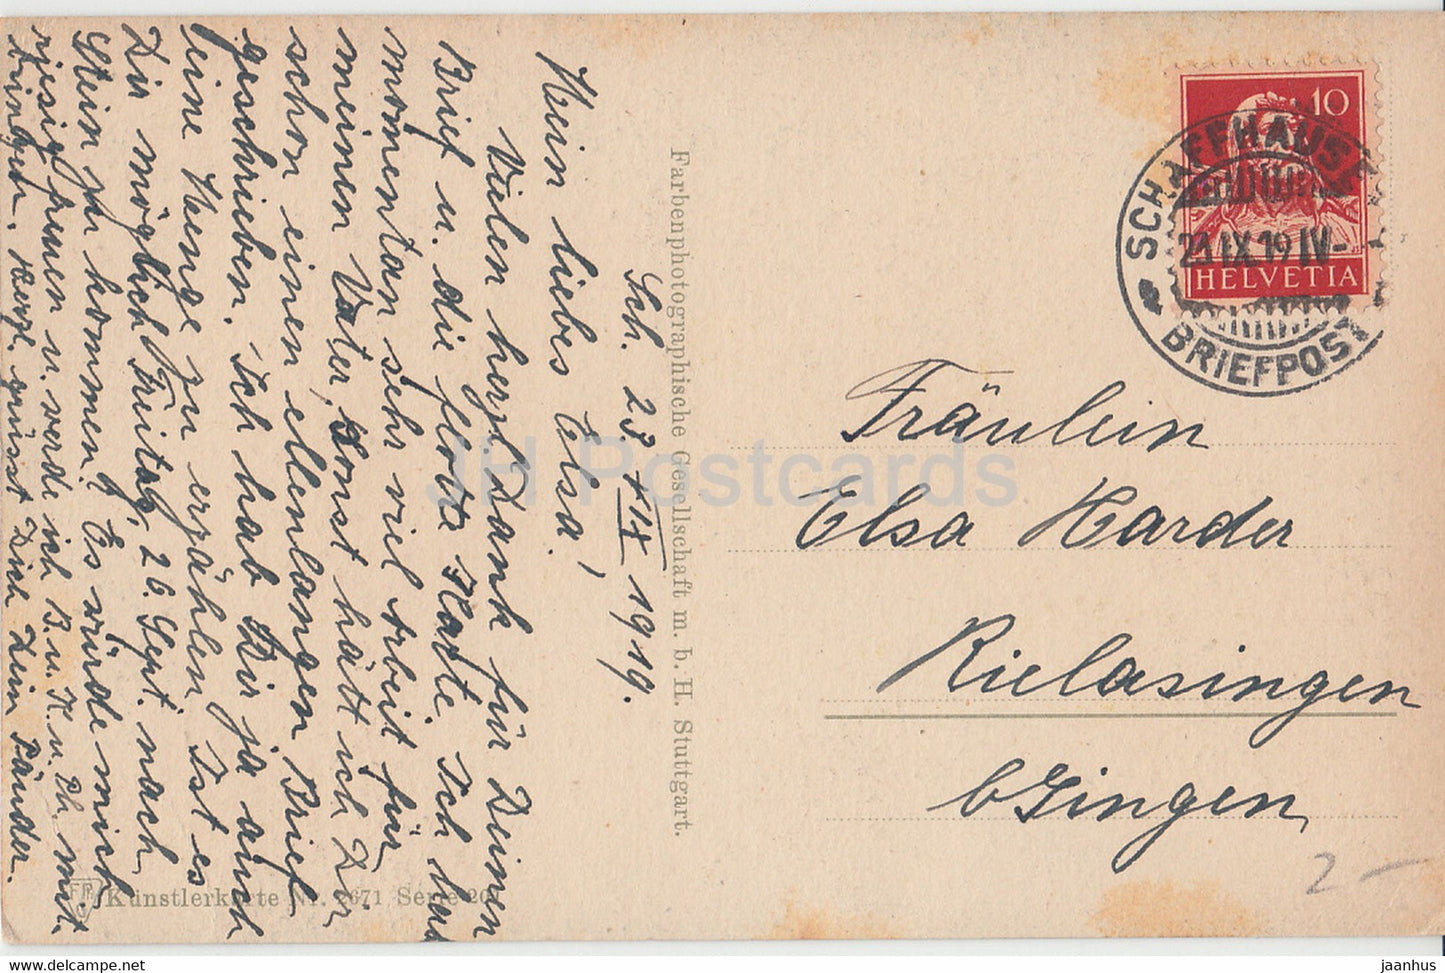 watermill - road - Kunstlerkarte - 2671 - Serie 201 - FPG - old postcard - 1919 -  Germany - used